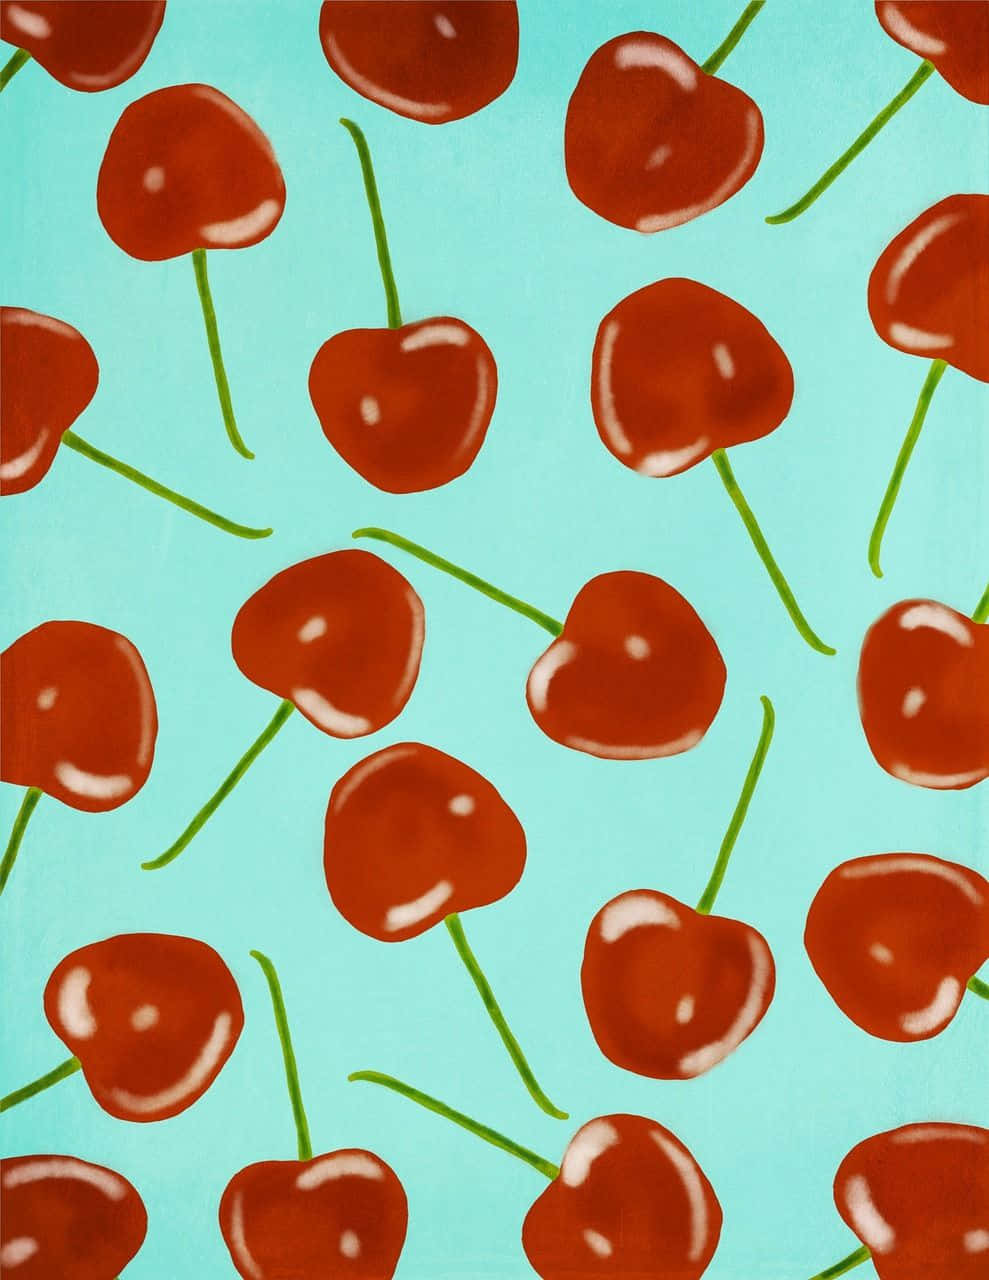 Send din smagsløg i overdrive med disse smukke kirsebær æstetikker. Wallpaper